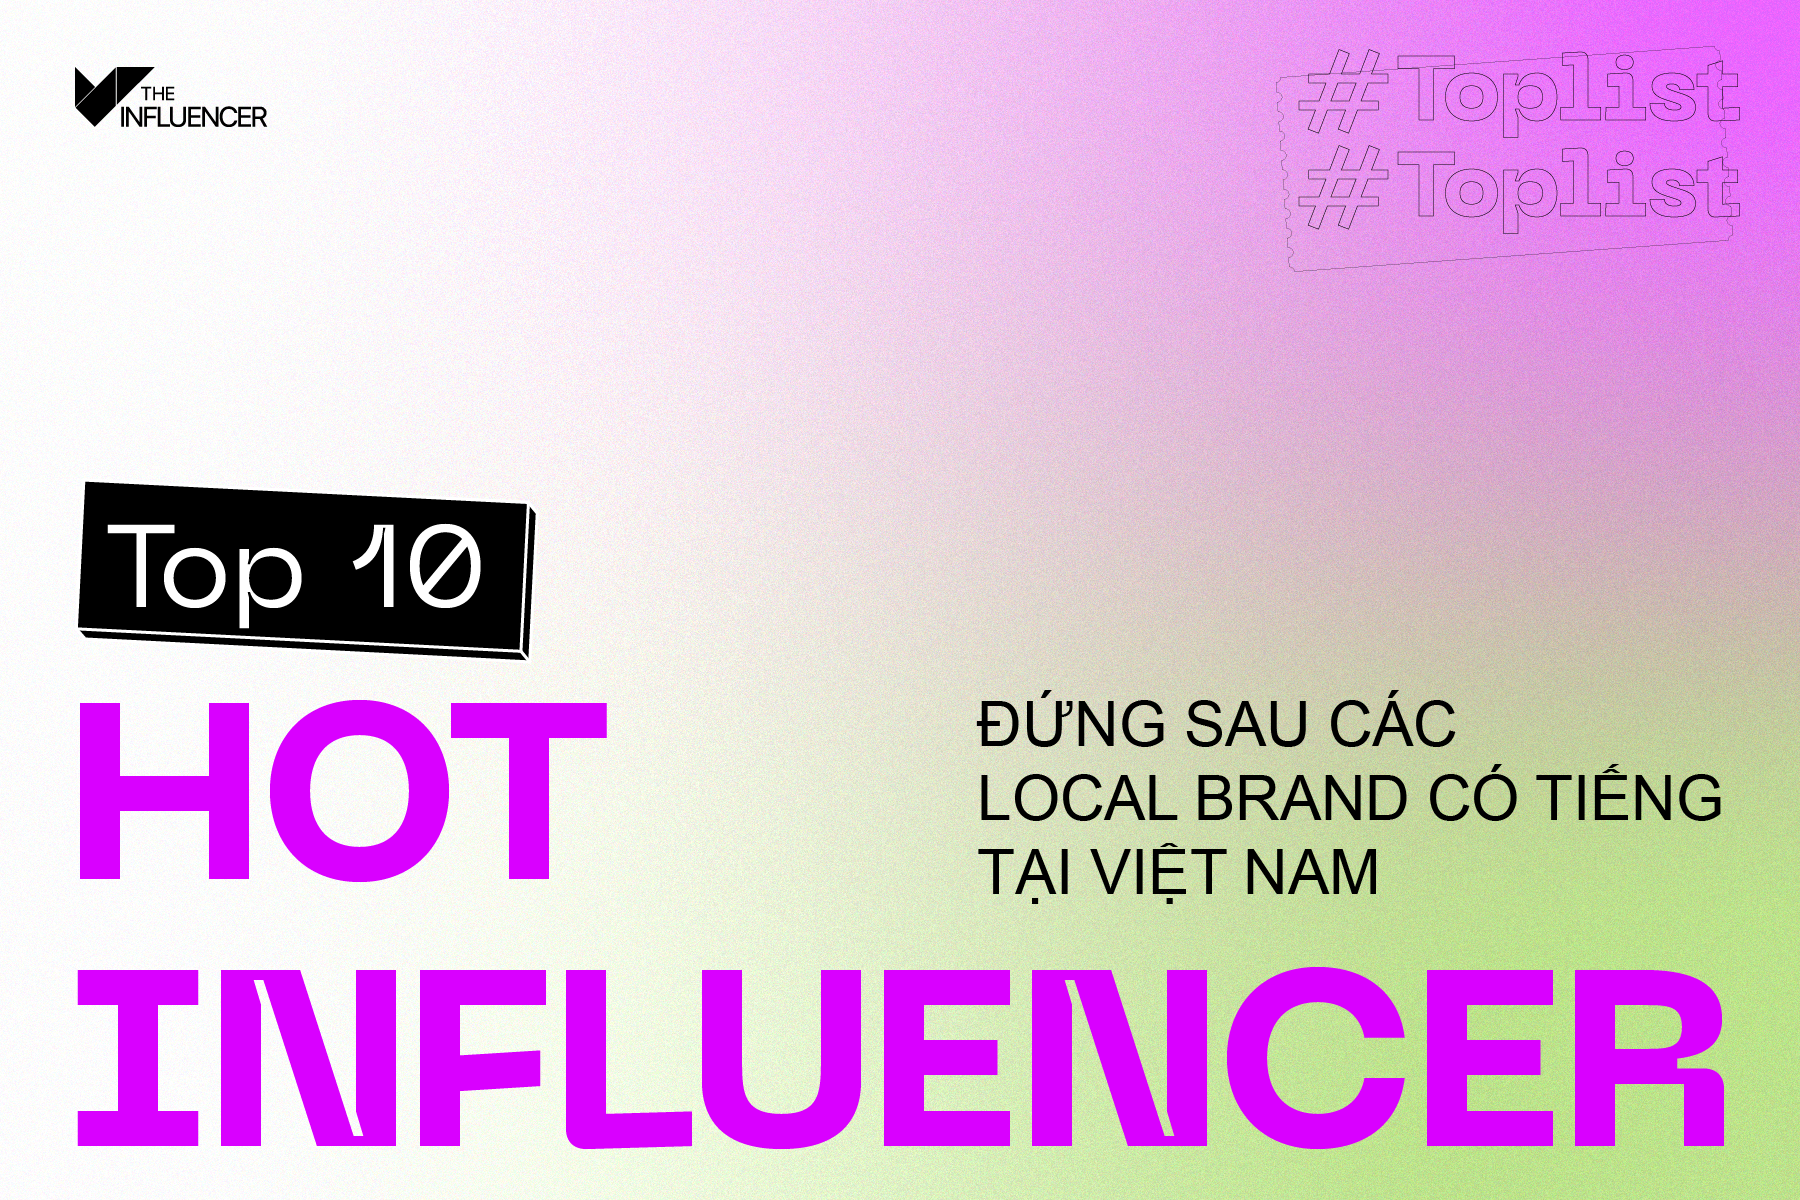 #Toplist: Top 10 hot influencer đứng sau các local brand có tiếng tại Việt Nam